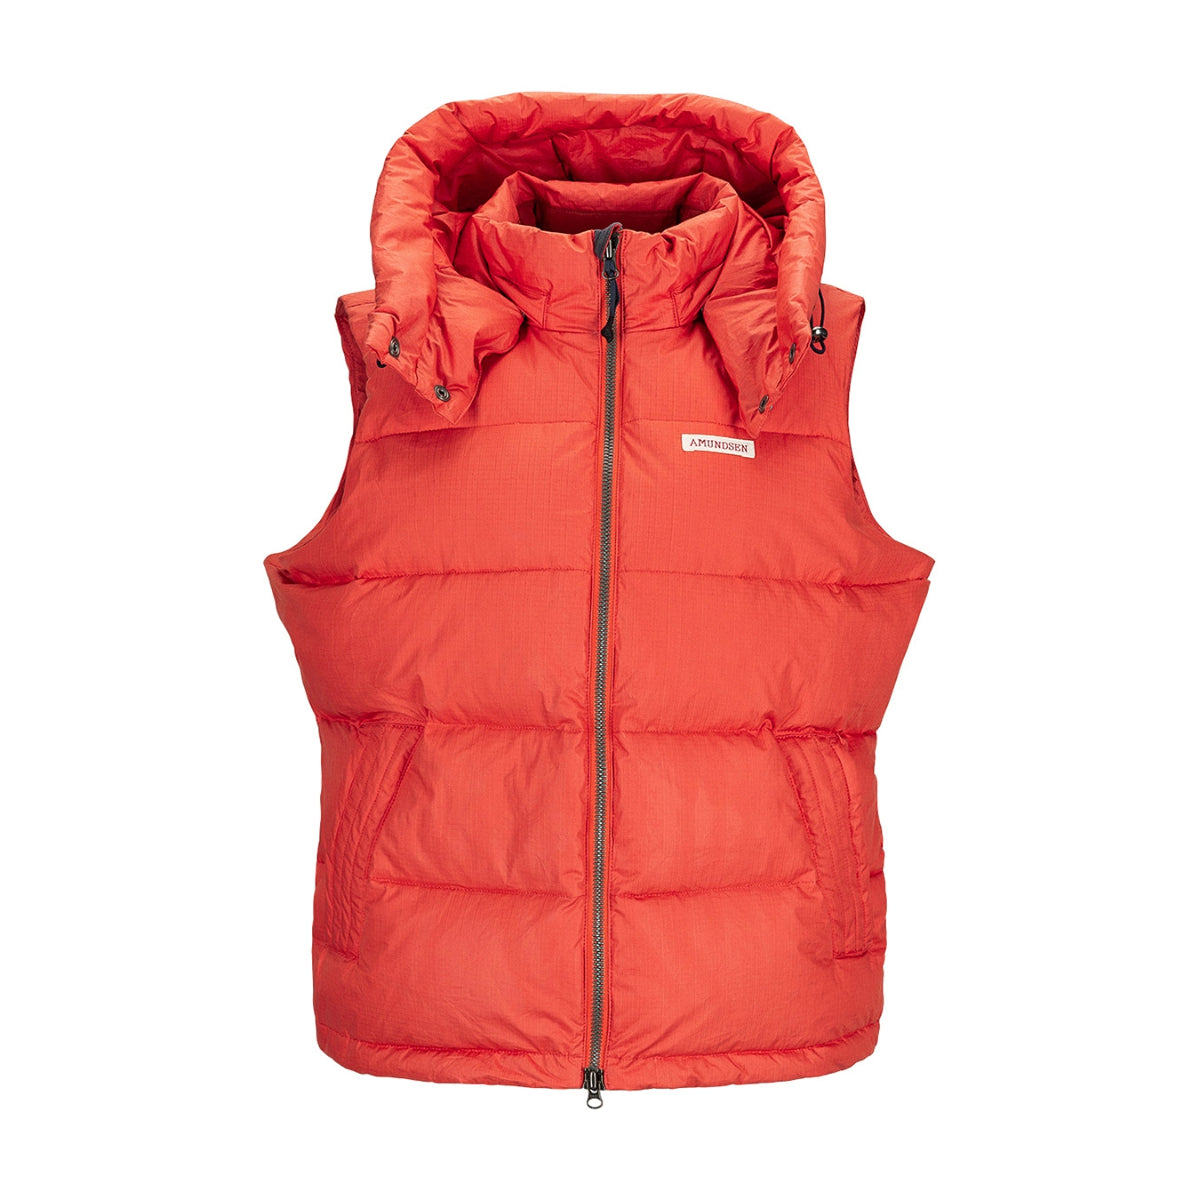 Amundsen Sports - Women's Winter Down Jacket - Weathered Red